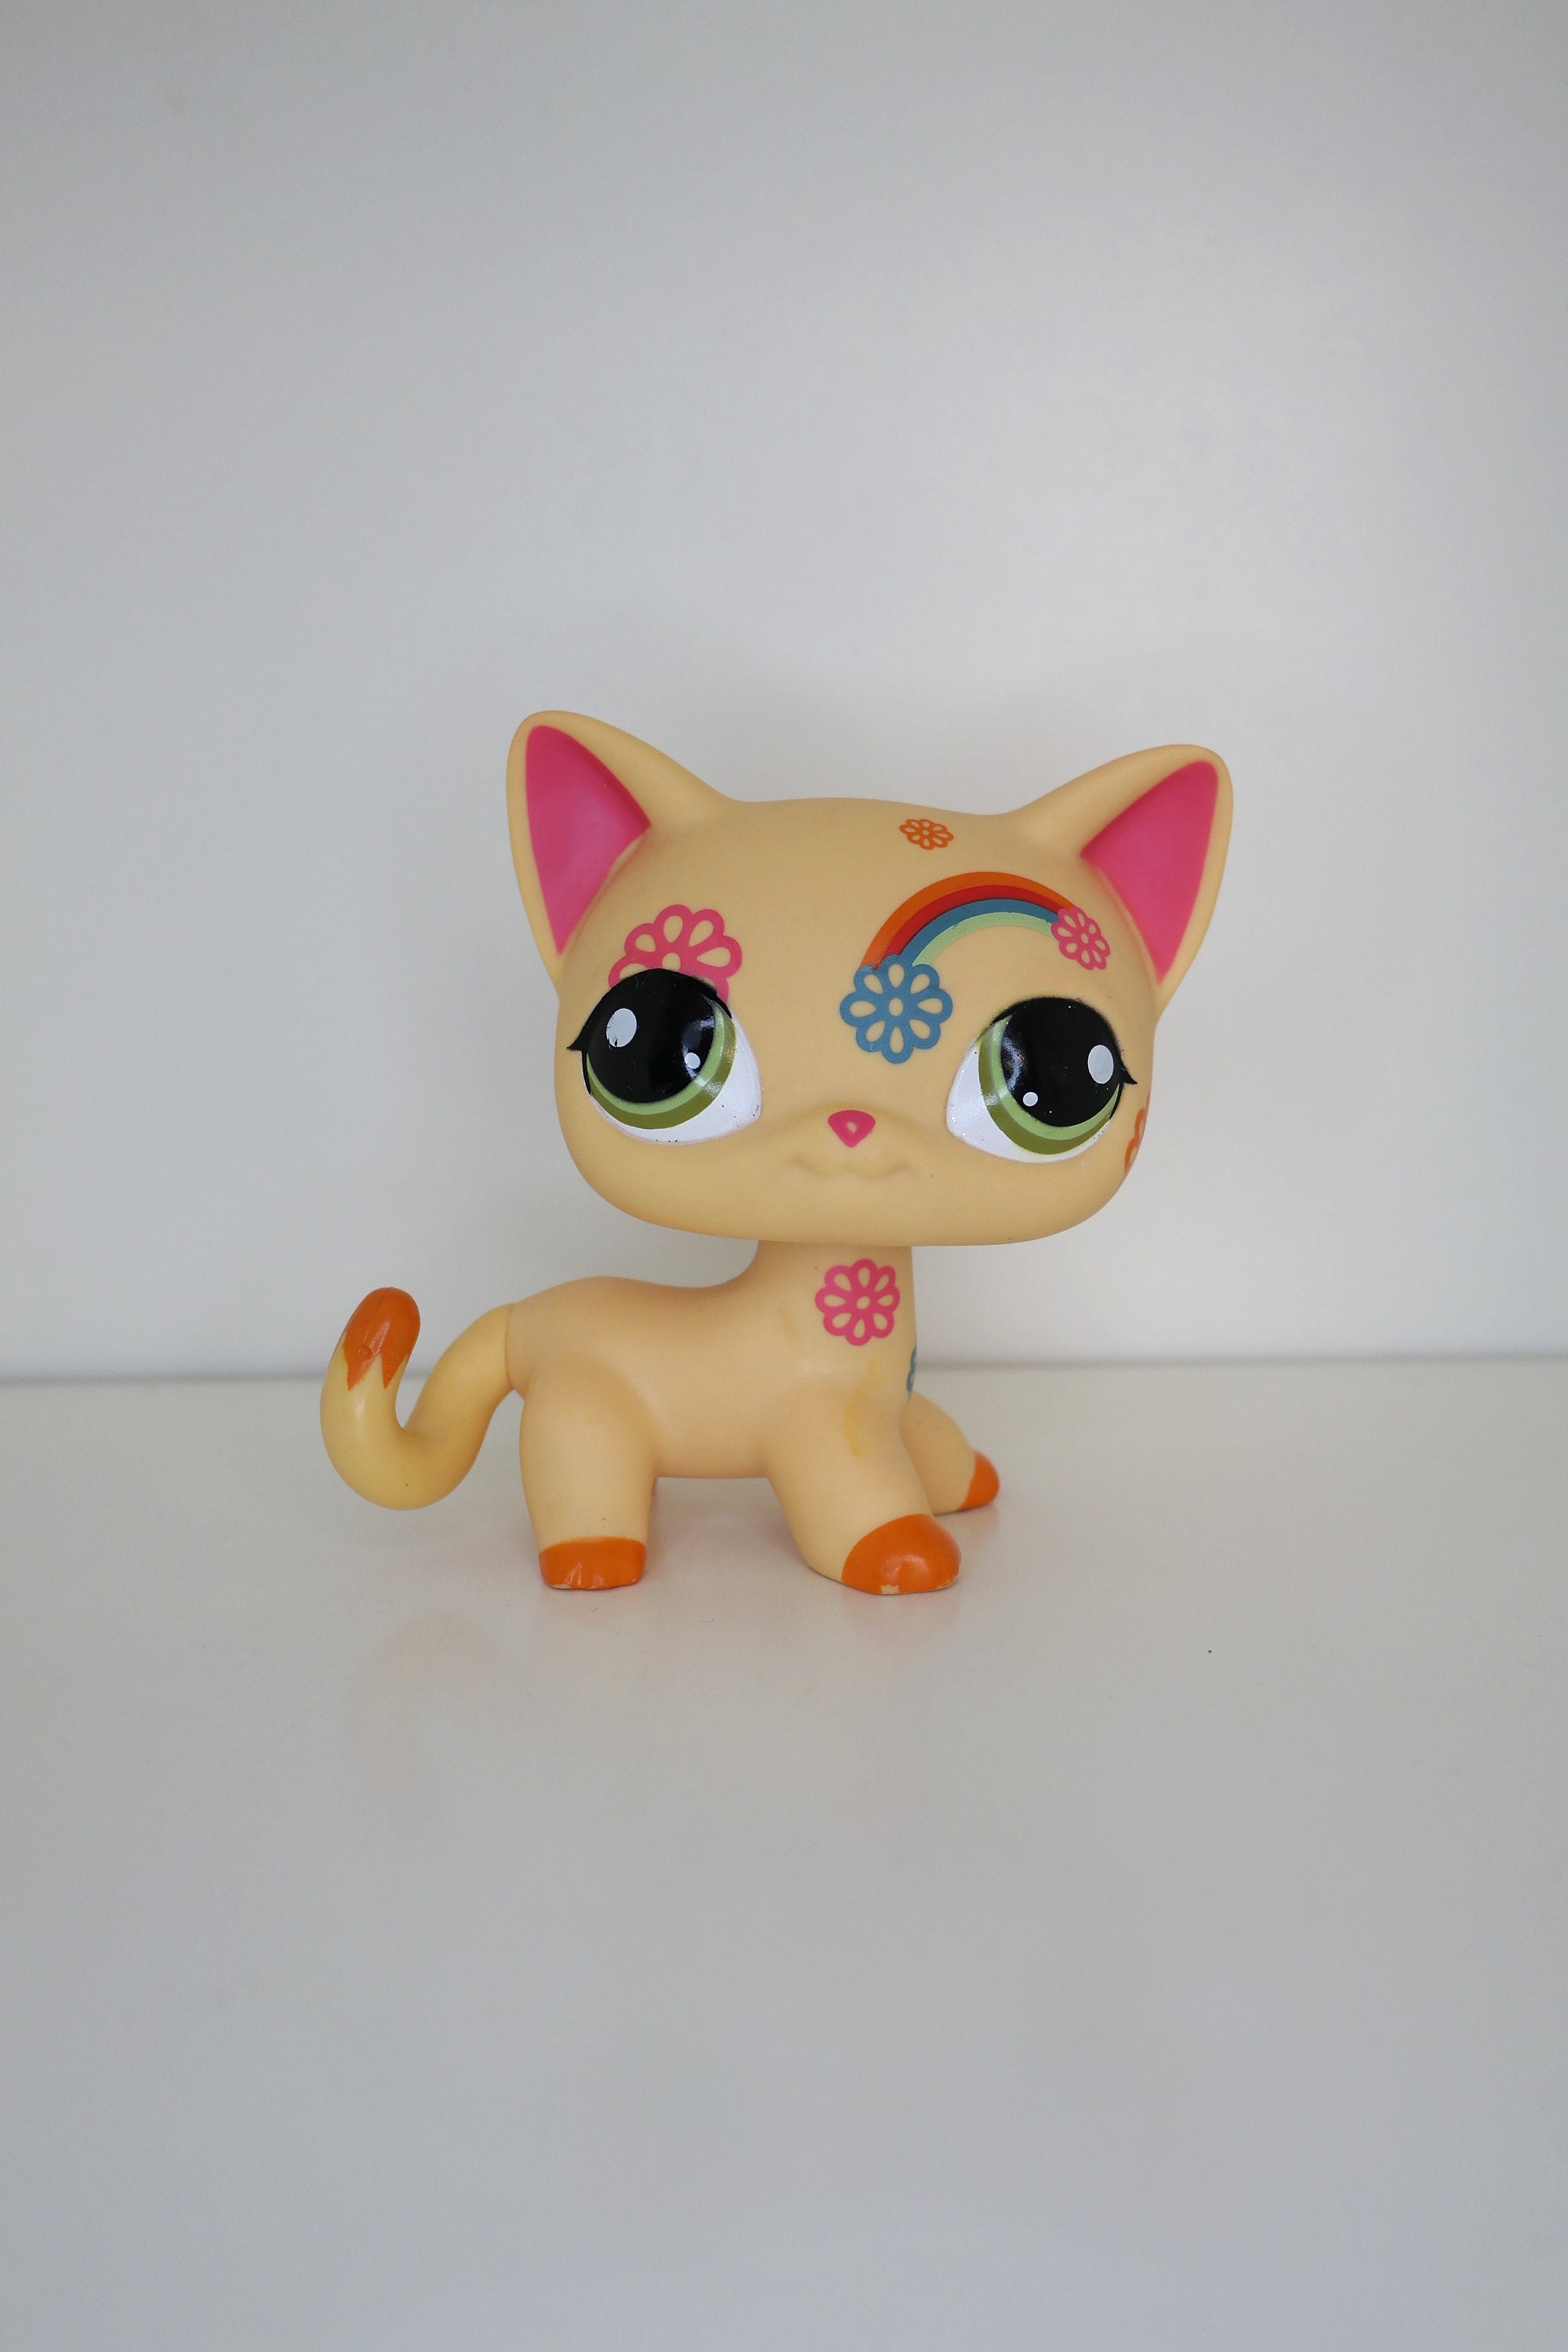 10pcs/lot Defective toy For DIY Paint Littlest pet shop Cats Dogs send  randomly